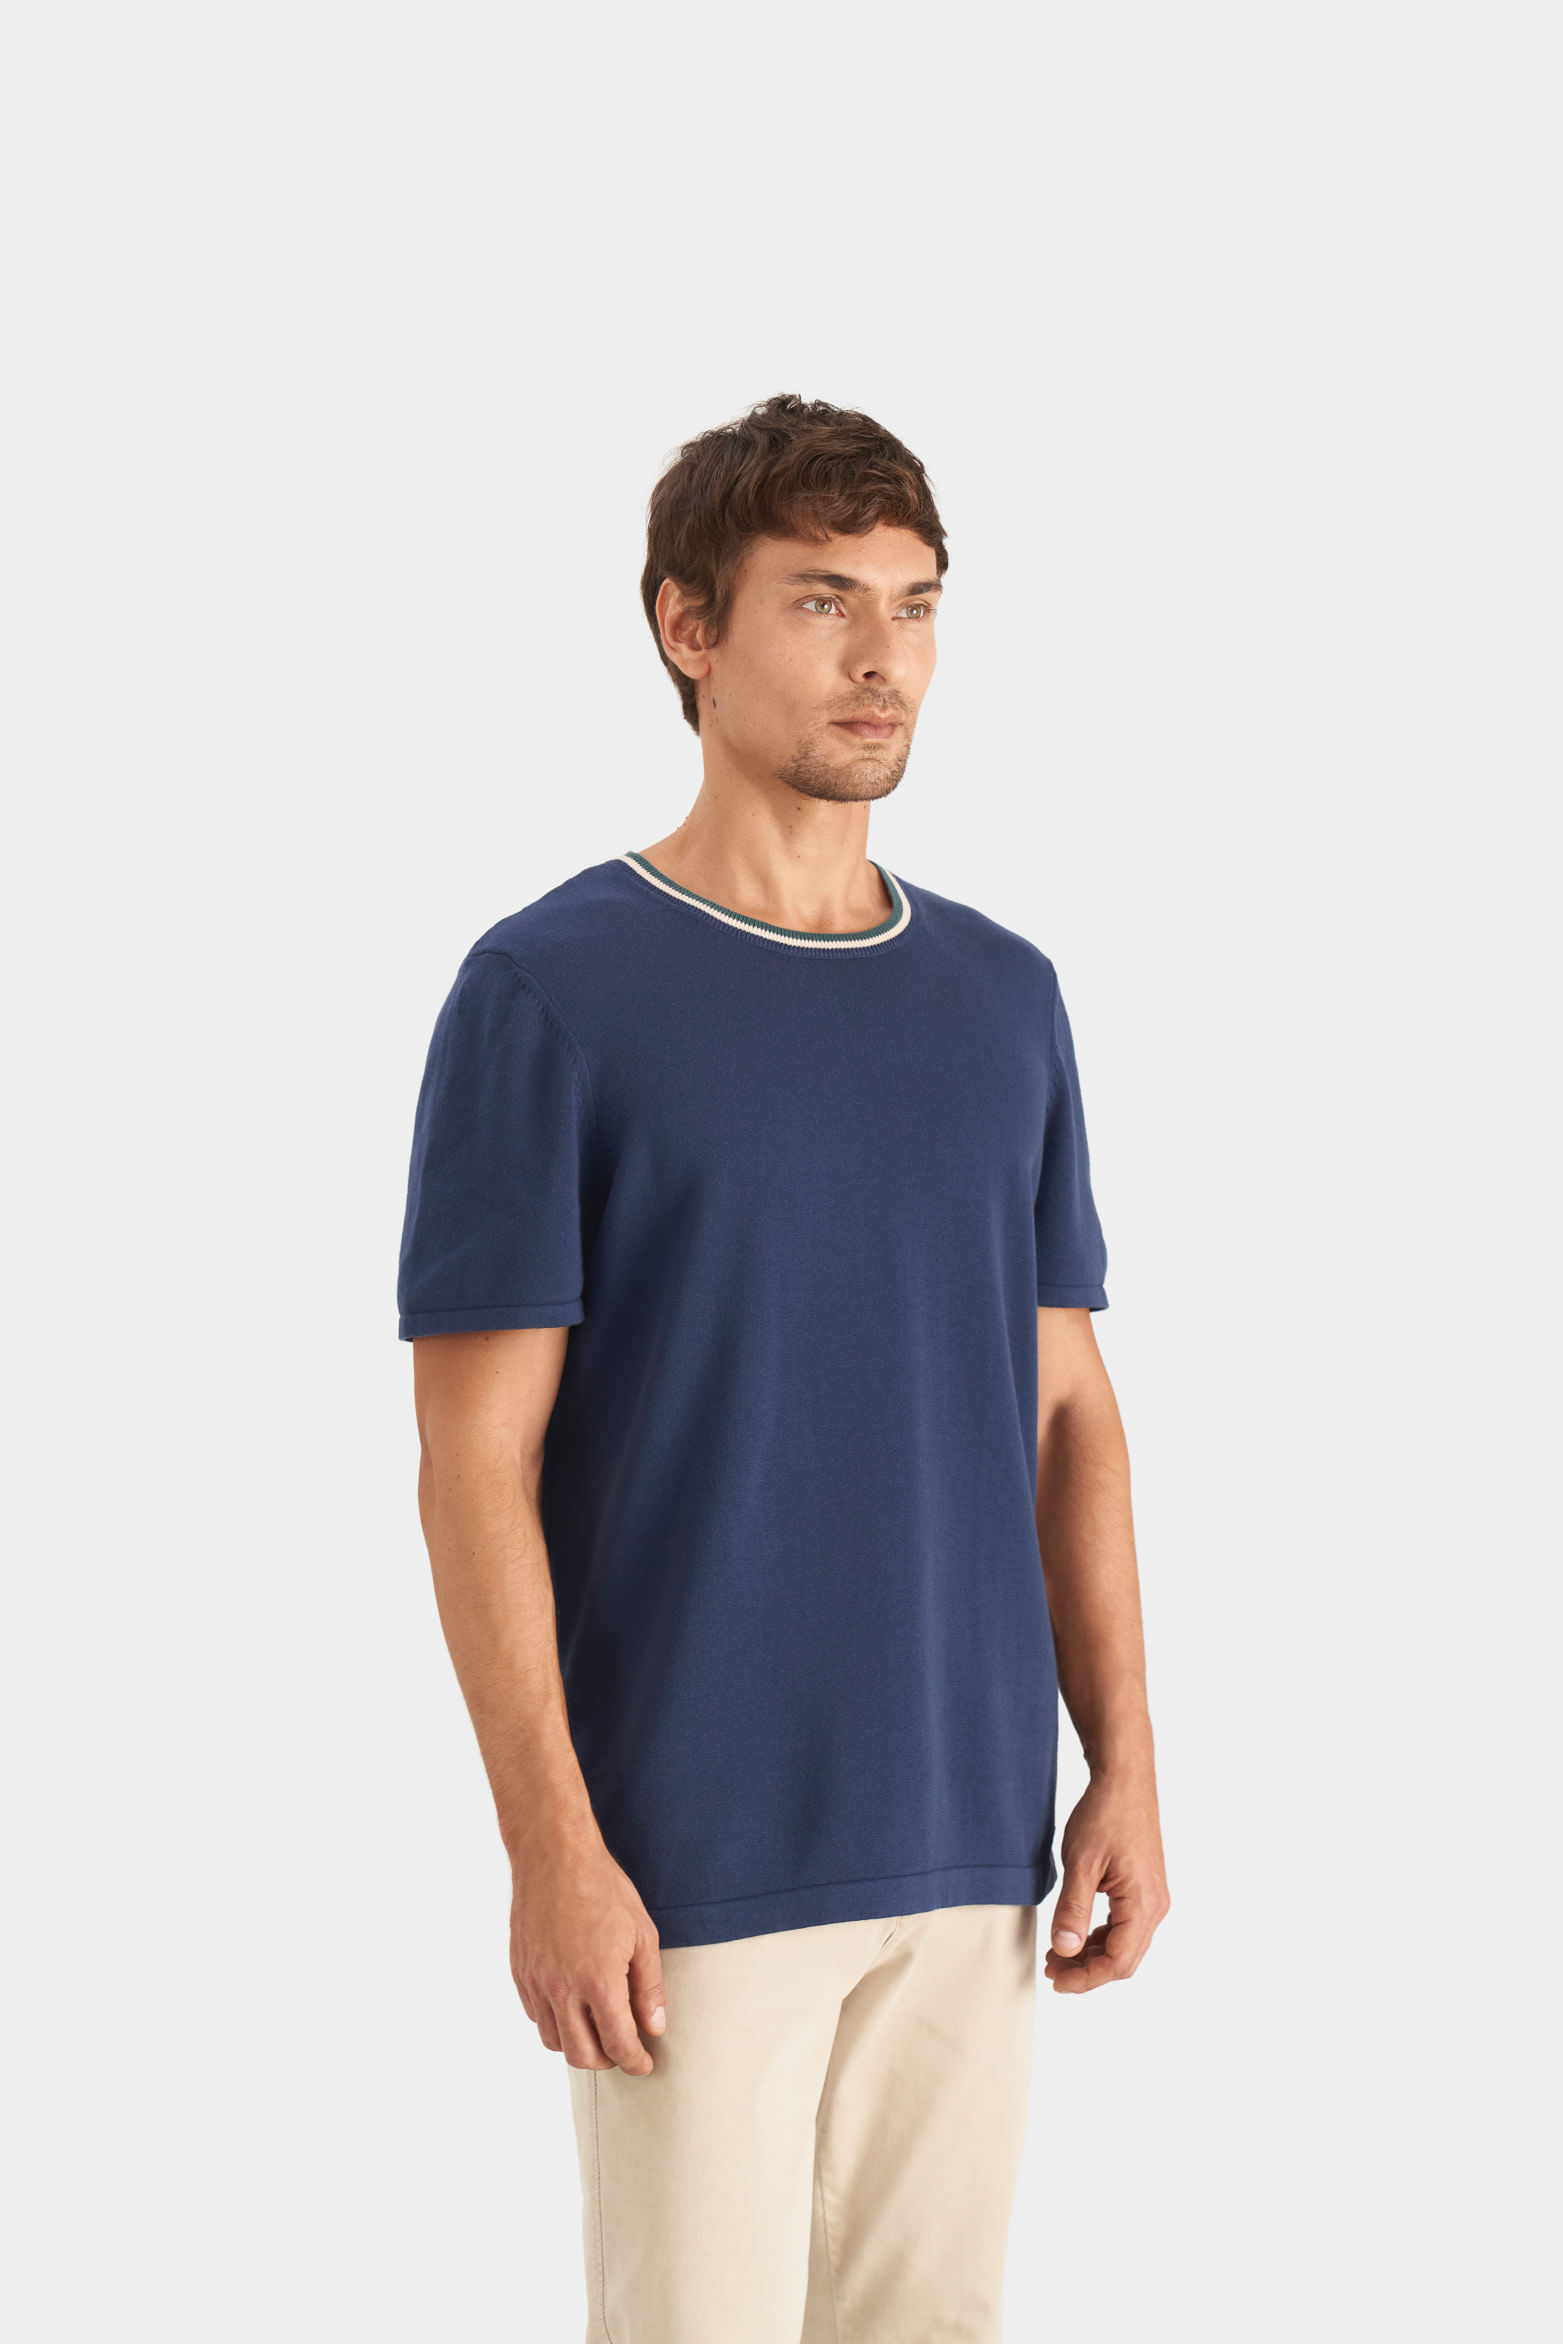 Camiseta en Algodón para Hombre  Compra Online Camiseta en Algodón para  Hombre en Punto Blanco®